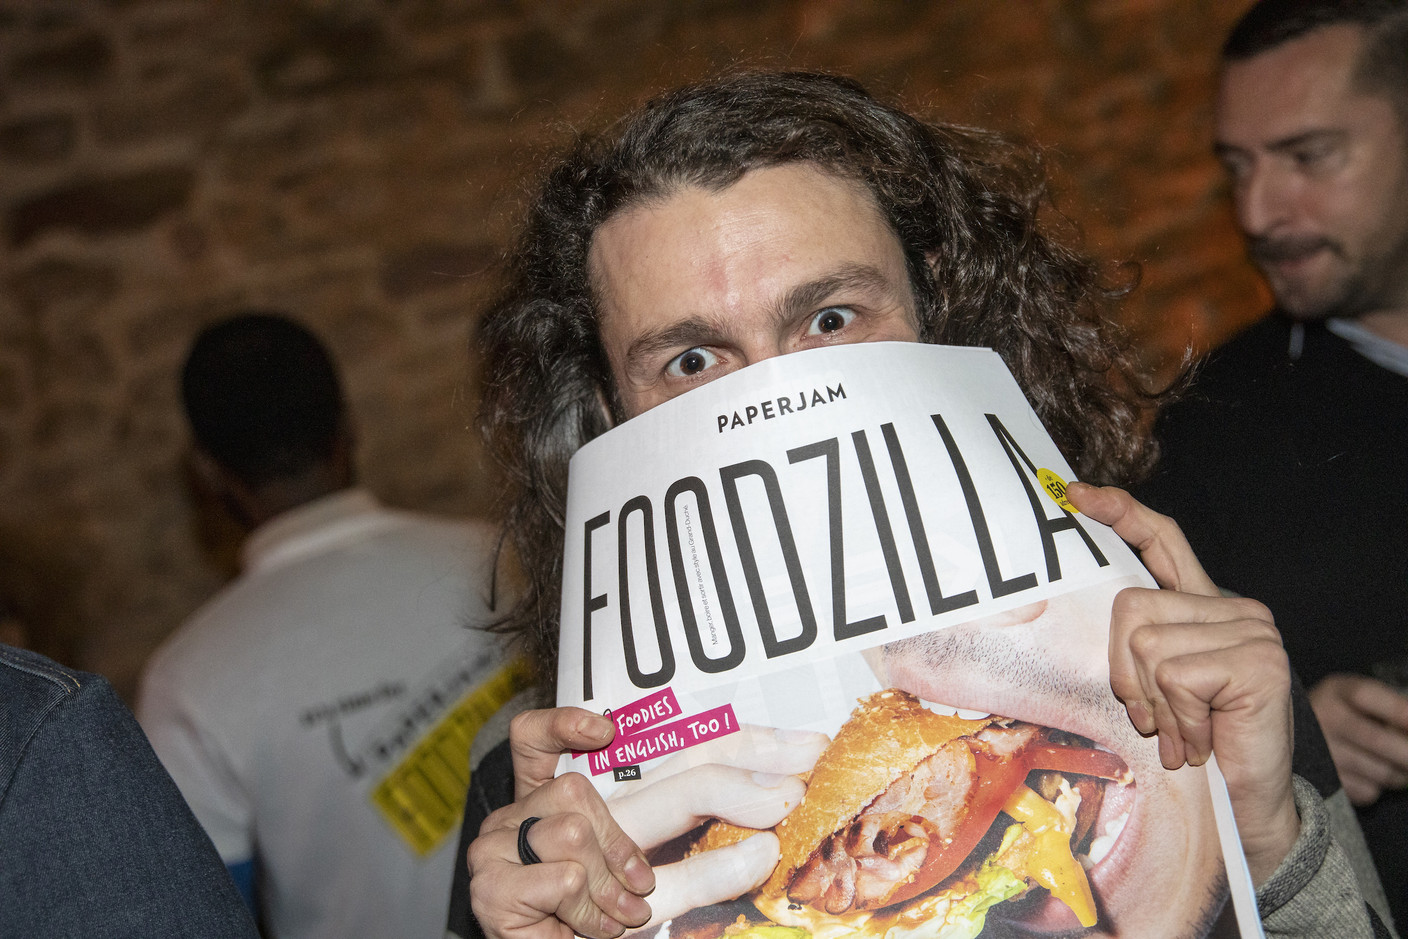 Soirée de lancement du nouveau journal Paperjam Foodzilla.  (Photo: Jan Hanrion/Maison Moderne)